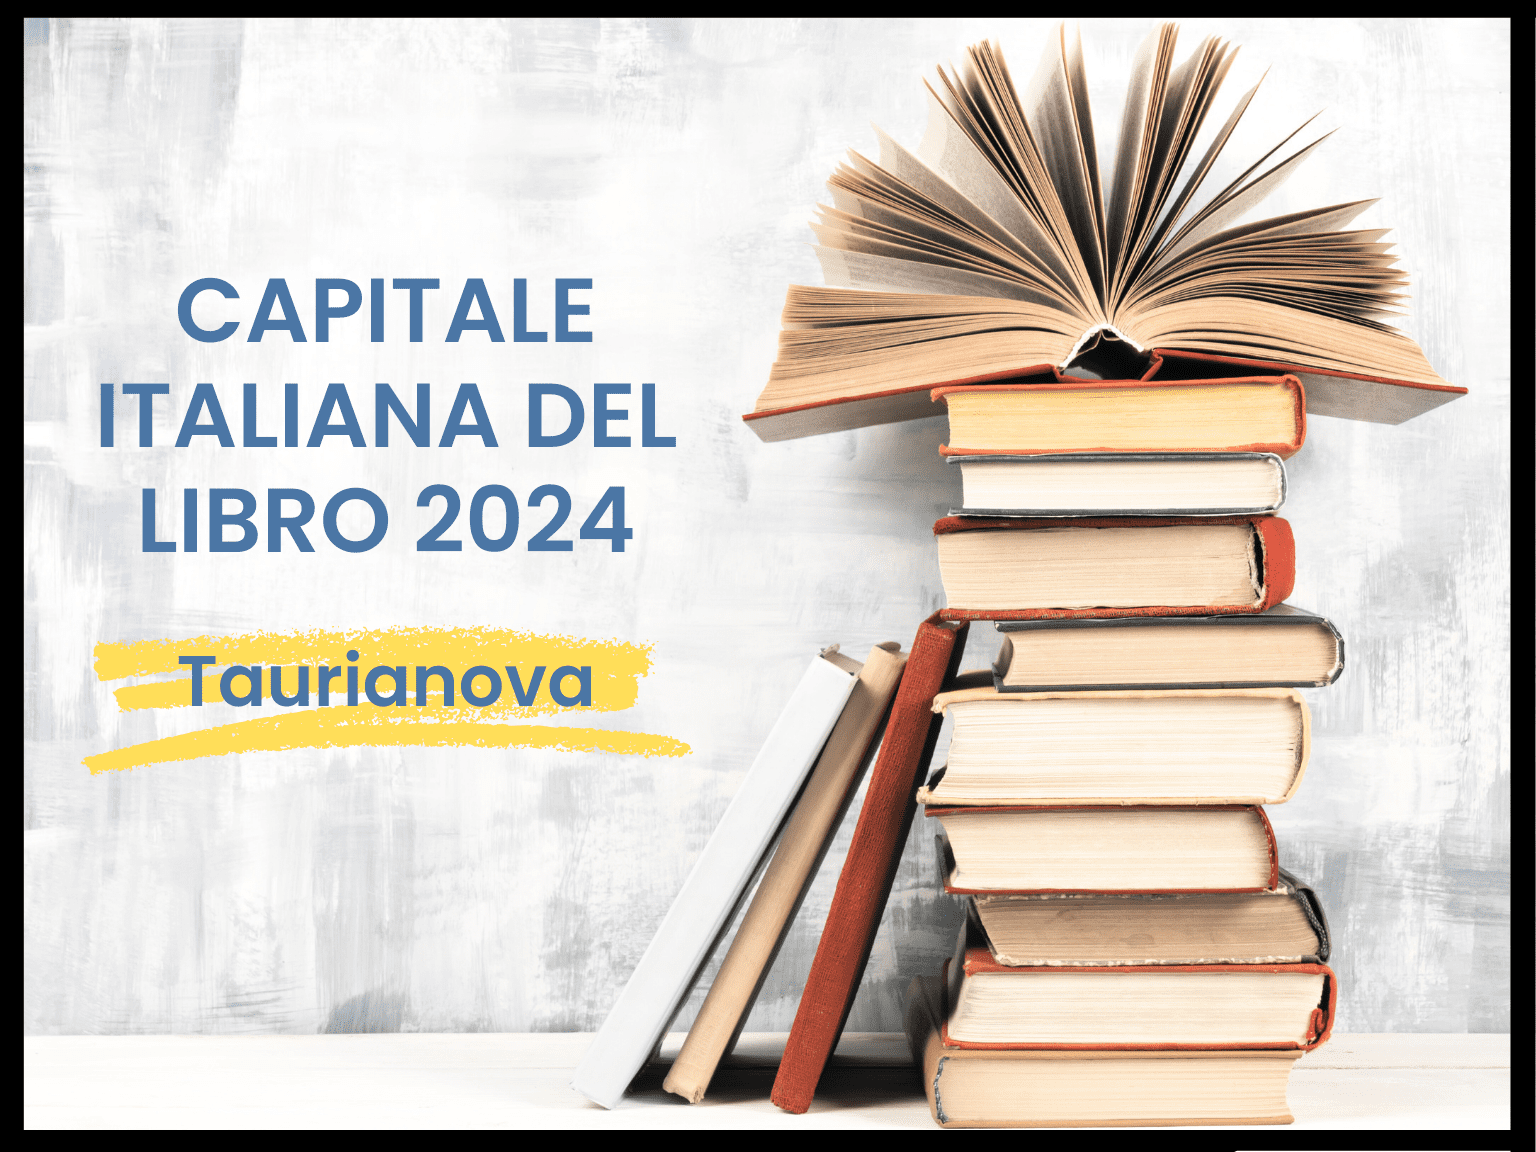 Capitale italiana del libro 2024 genera polemiche: Taurianova scelta tra contestazioni e richieste di chiarimento dalle città finaliste